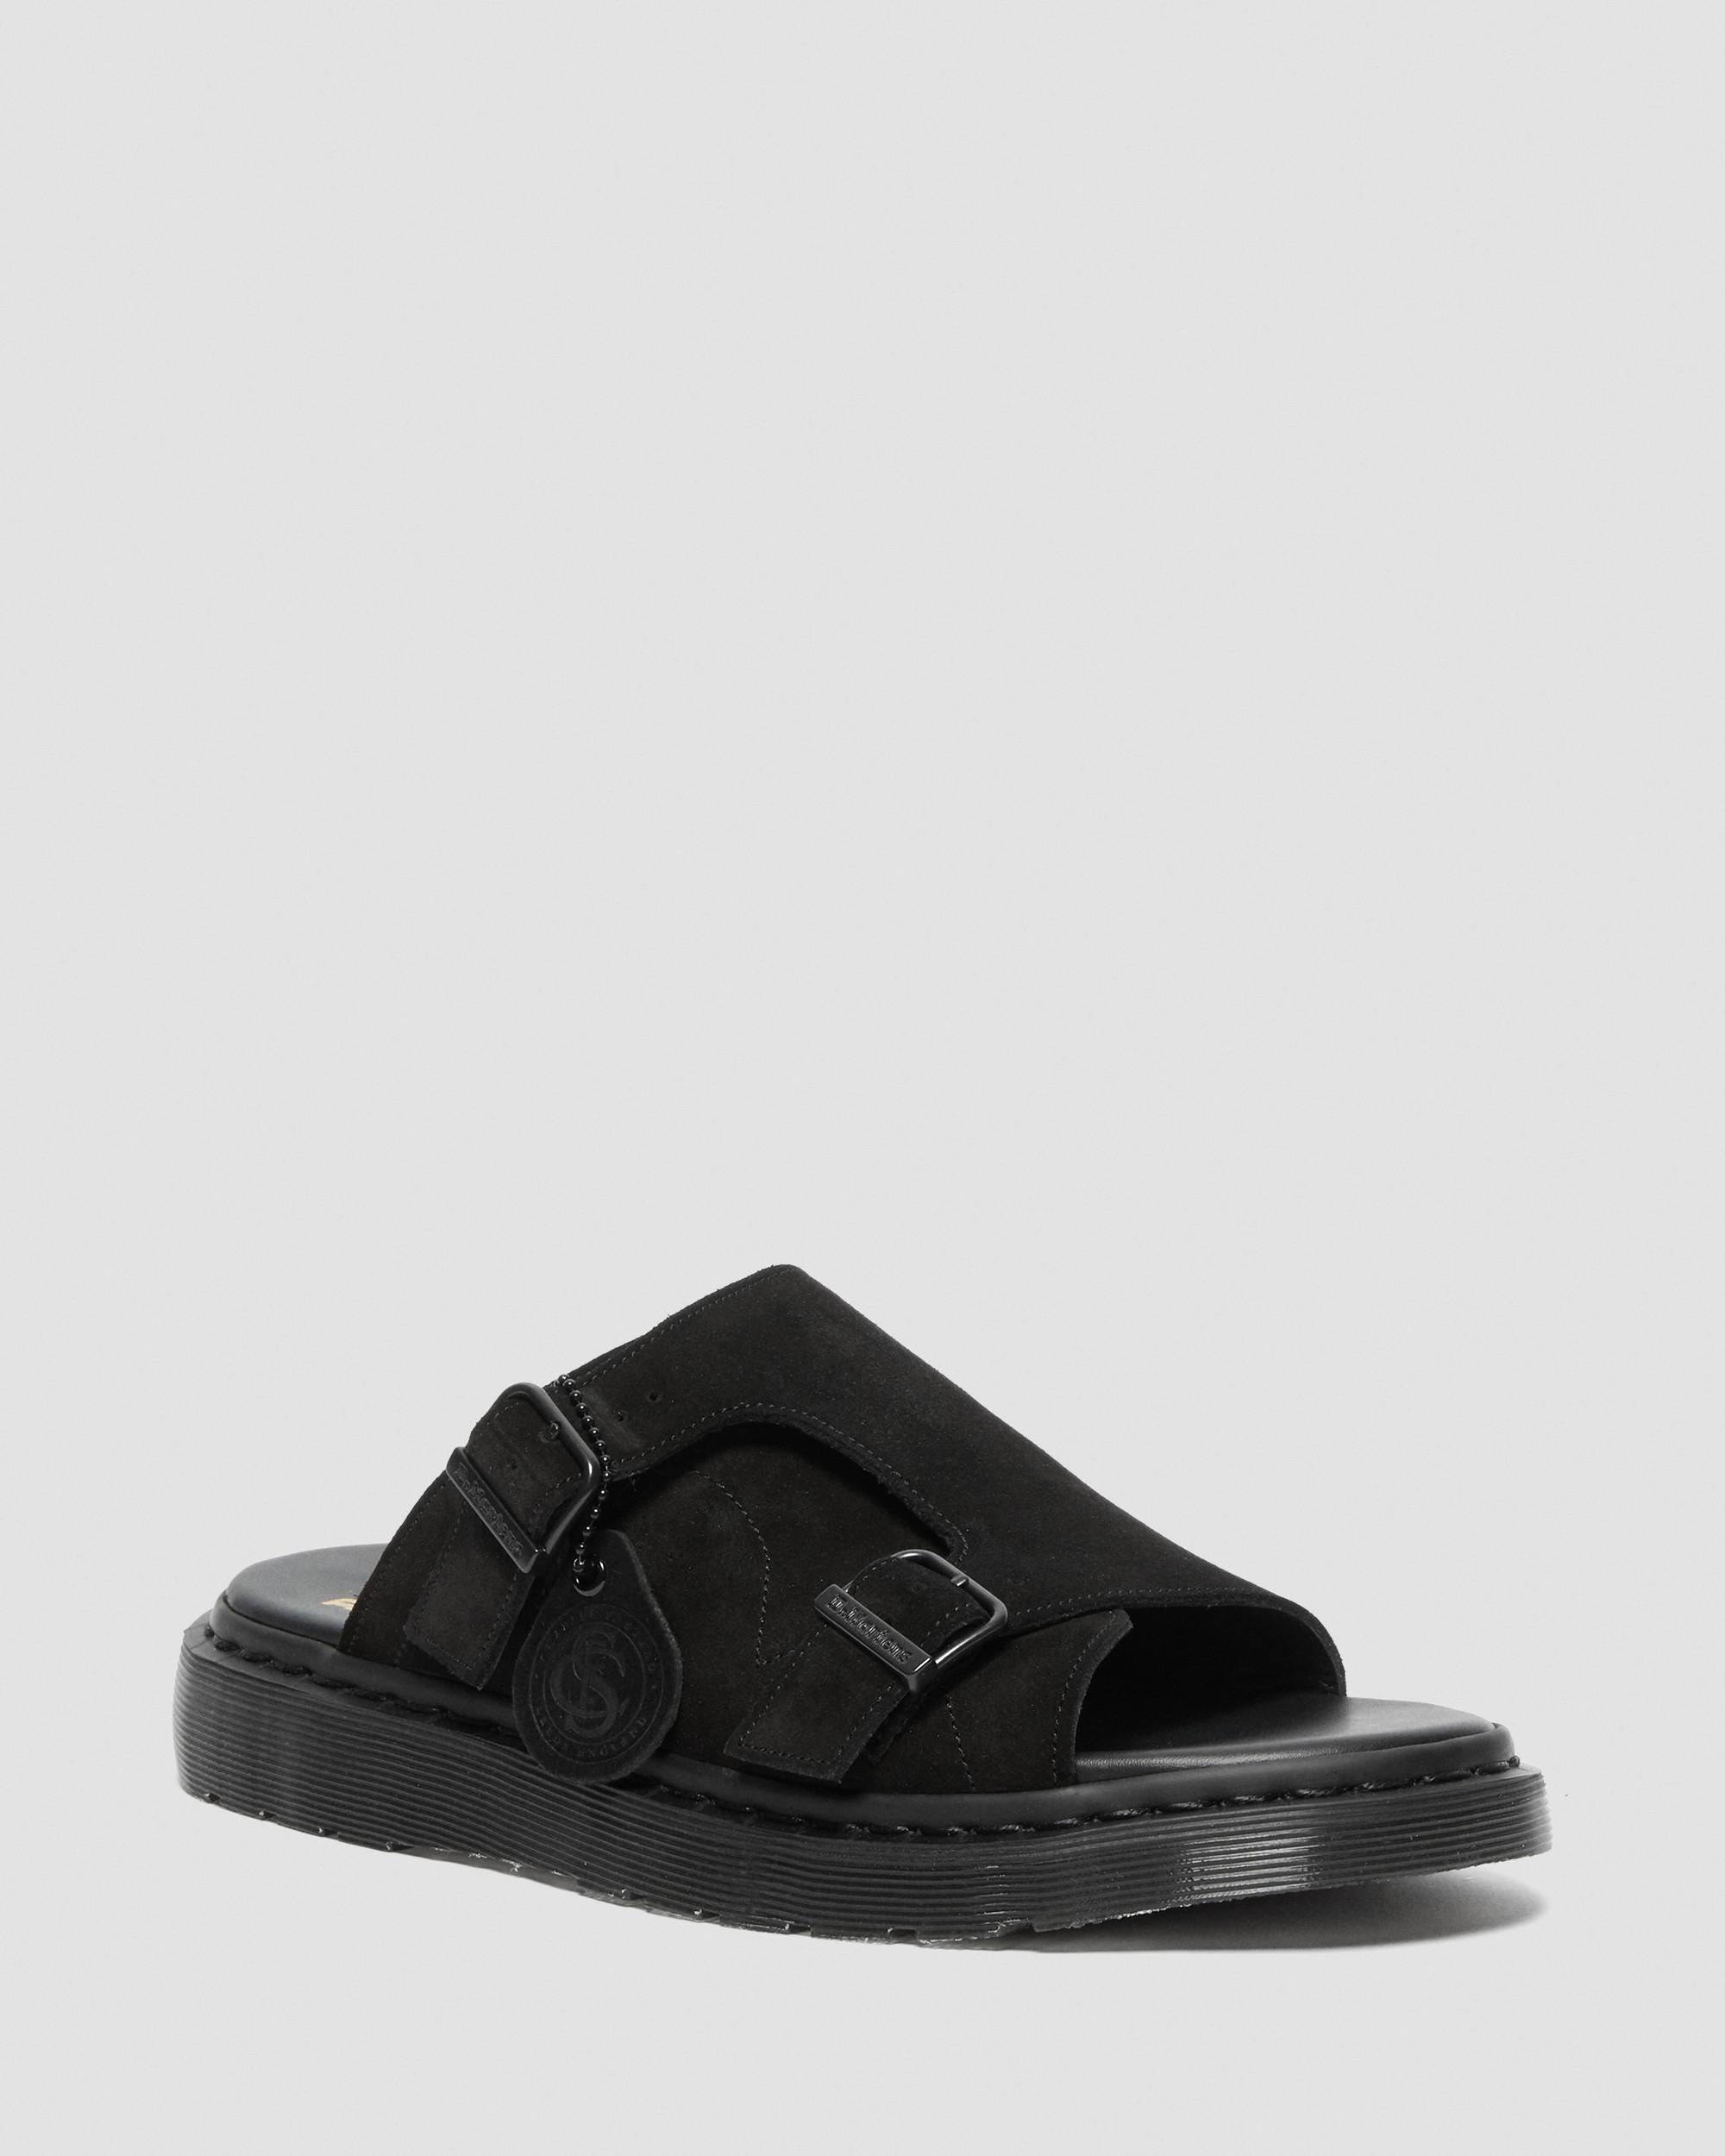 Dayne Made in England Suede Slide Sandals